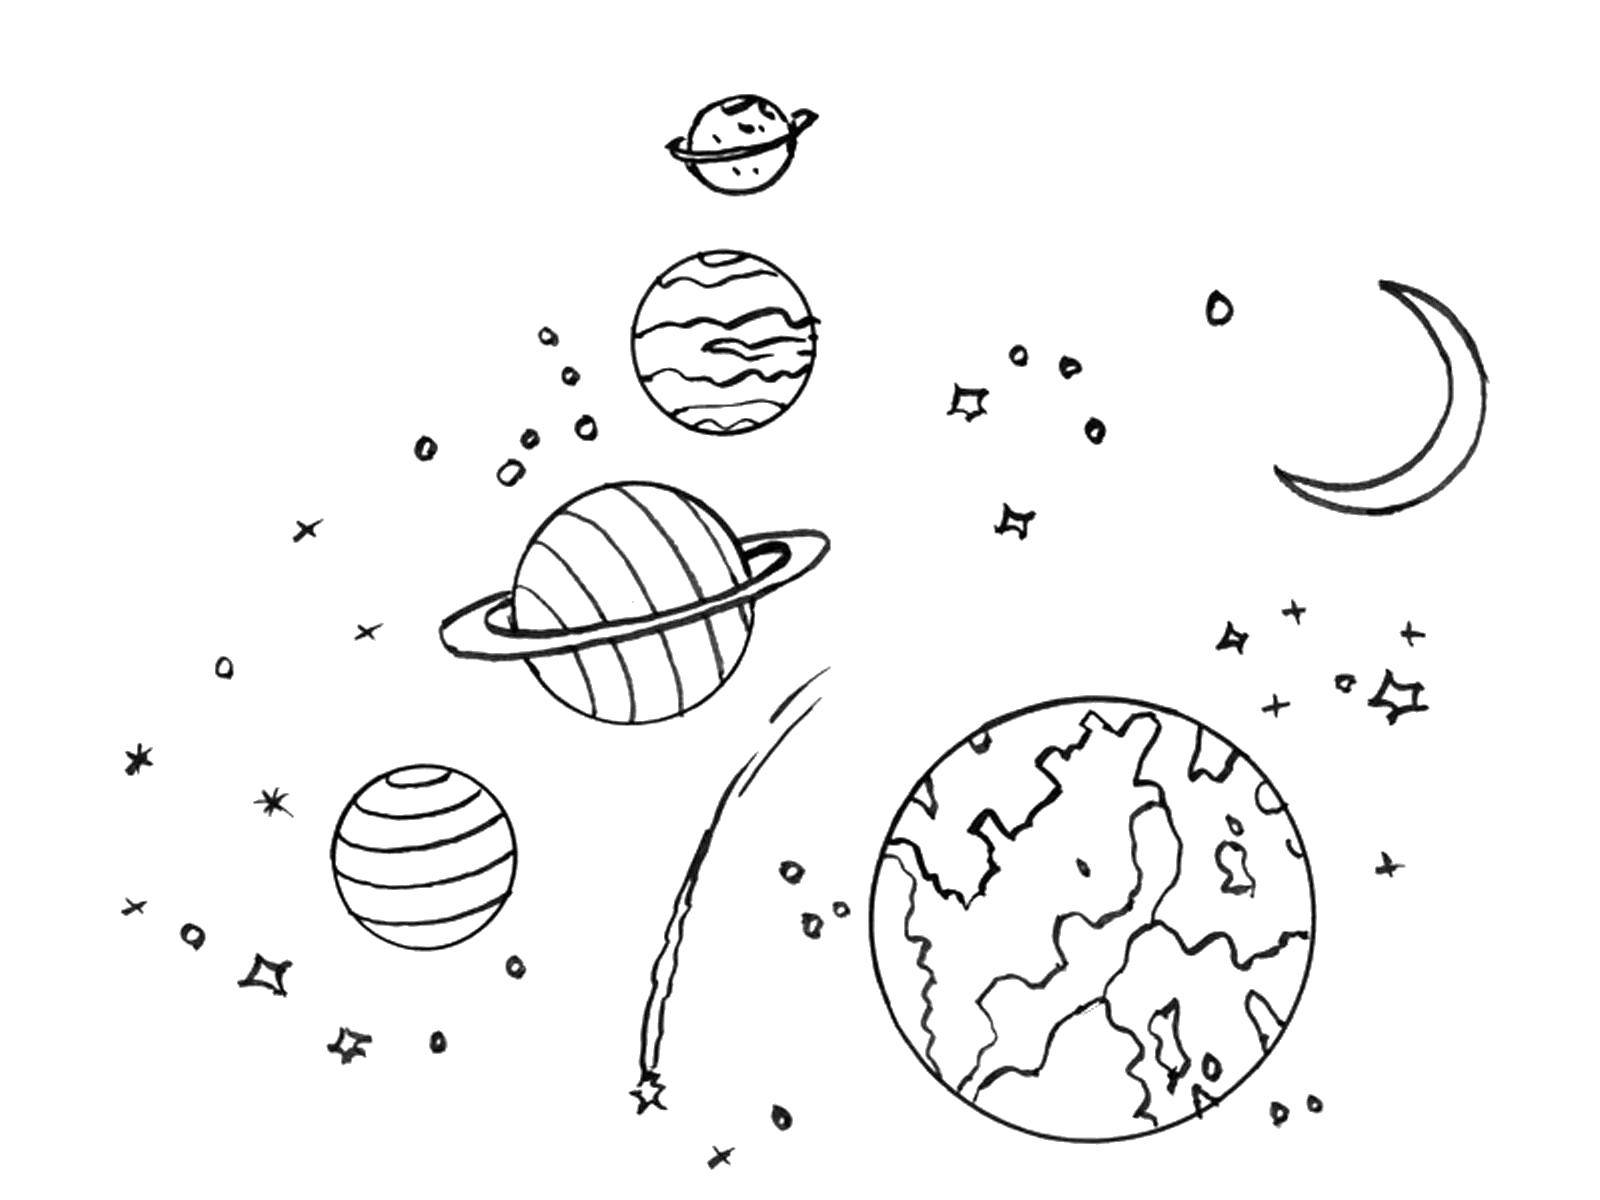 Планеты картинки для детей раскраски. Космос раскраска для детей. Планеты раскраска для детей. Раскраска космос и планеты для детей.